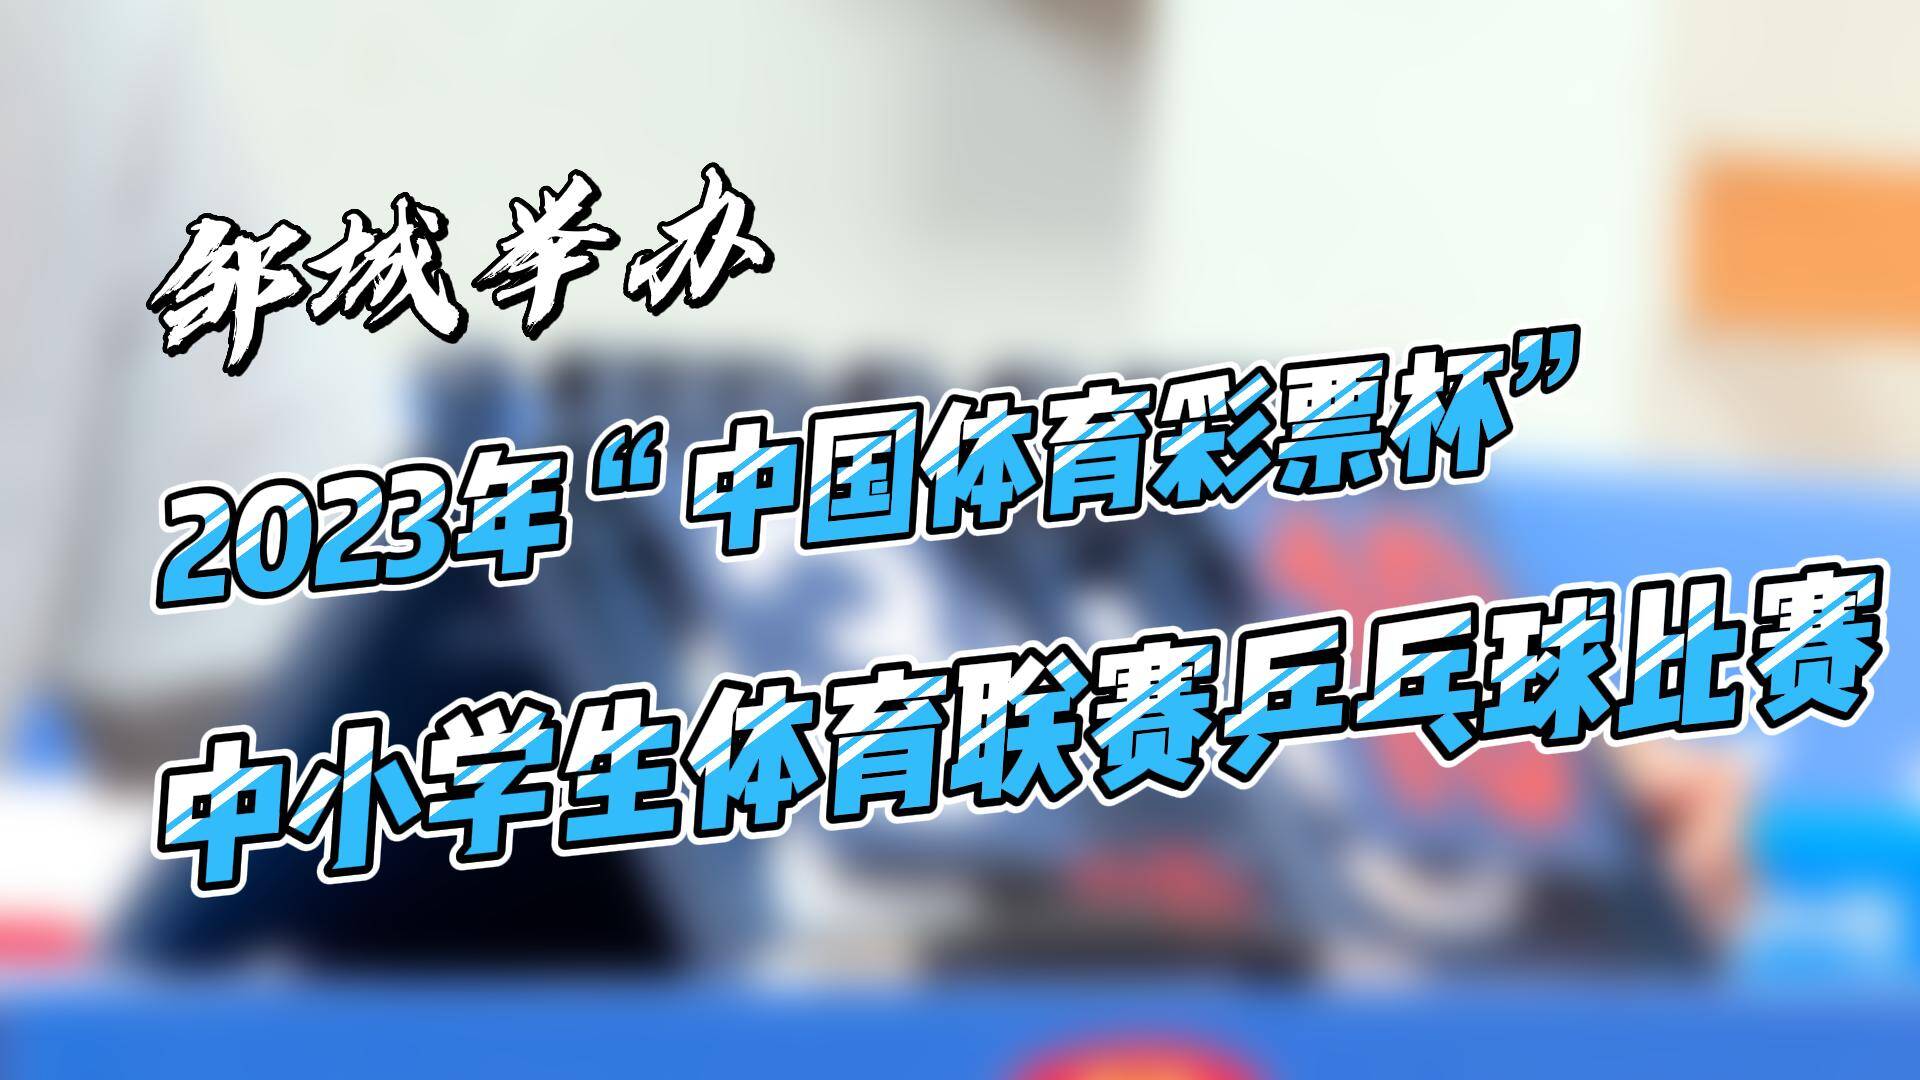 【邹视频·新闻】37秒 | 邹城举办2023年“中国体育彩票杯”中小学生体育联赛乒乓球比赛